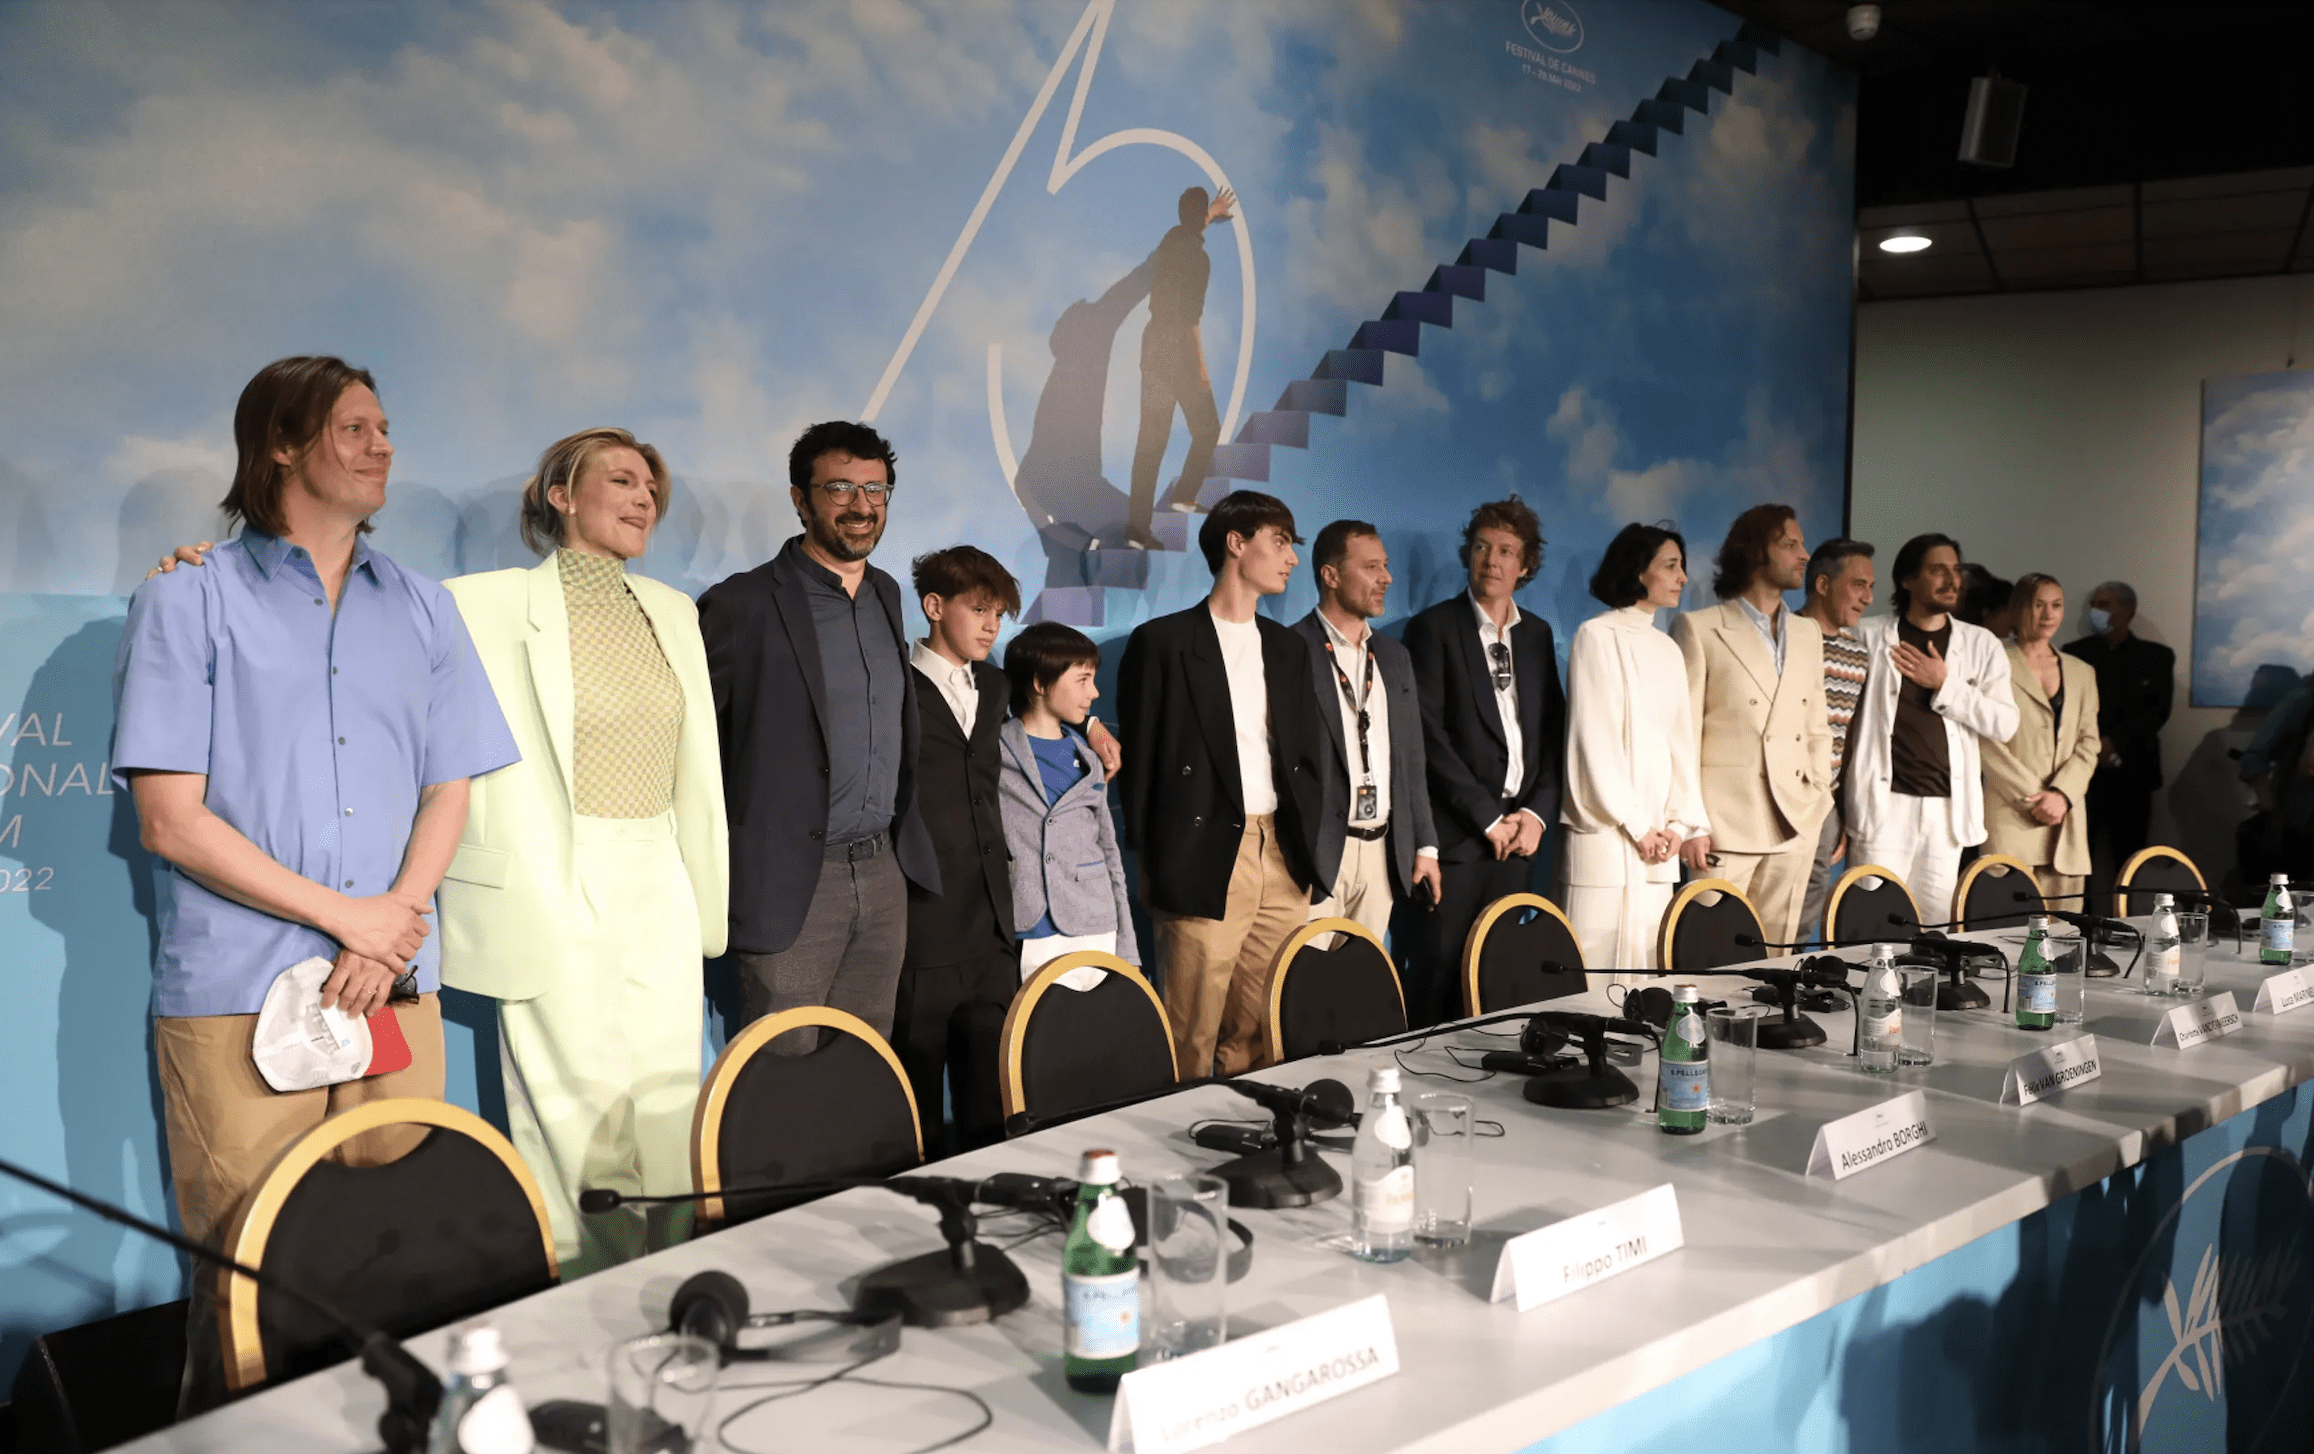 Le otto montagne conferenza stampa Cannes 2022